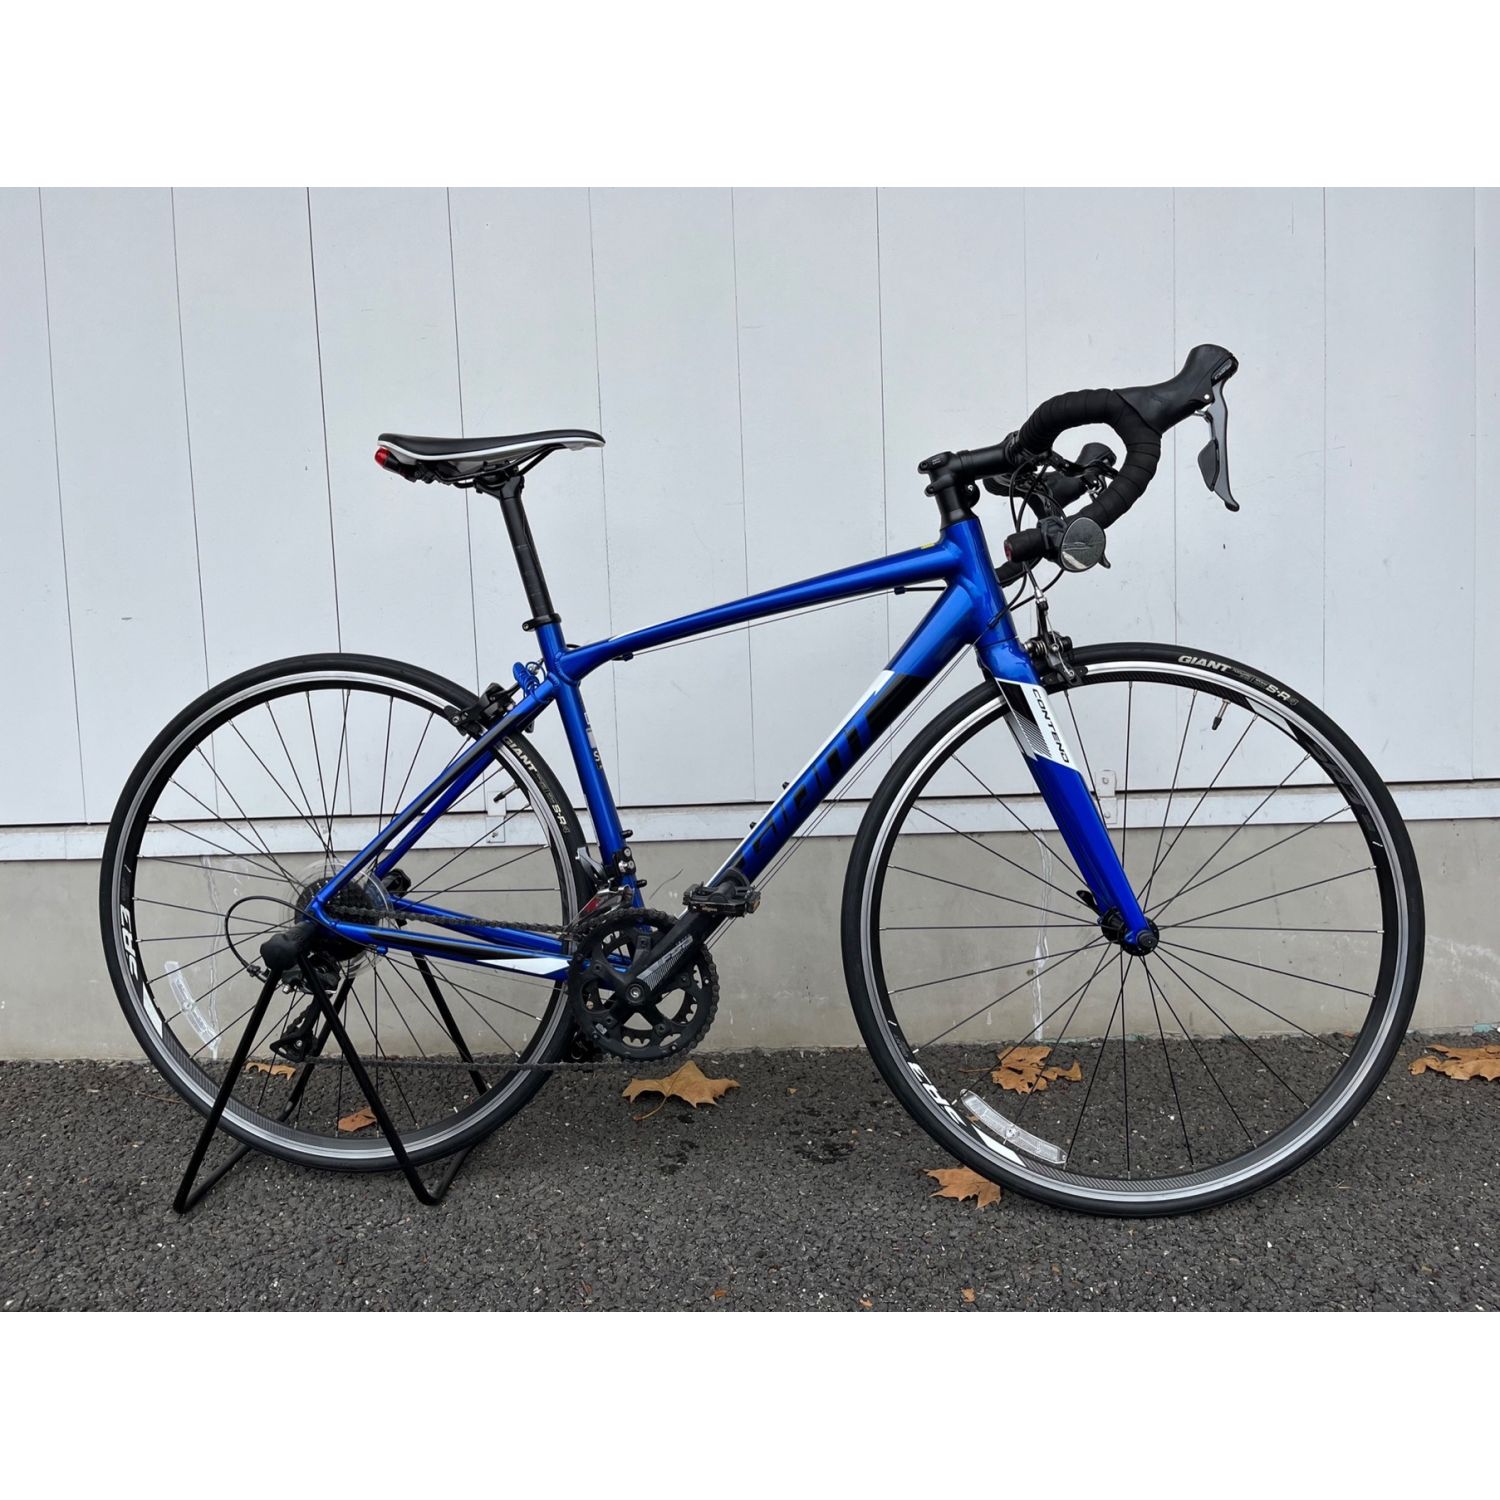 GIANT (ジャイアント) ロードバイク フレームサイズ465mm ブルー 2018